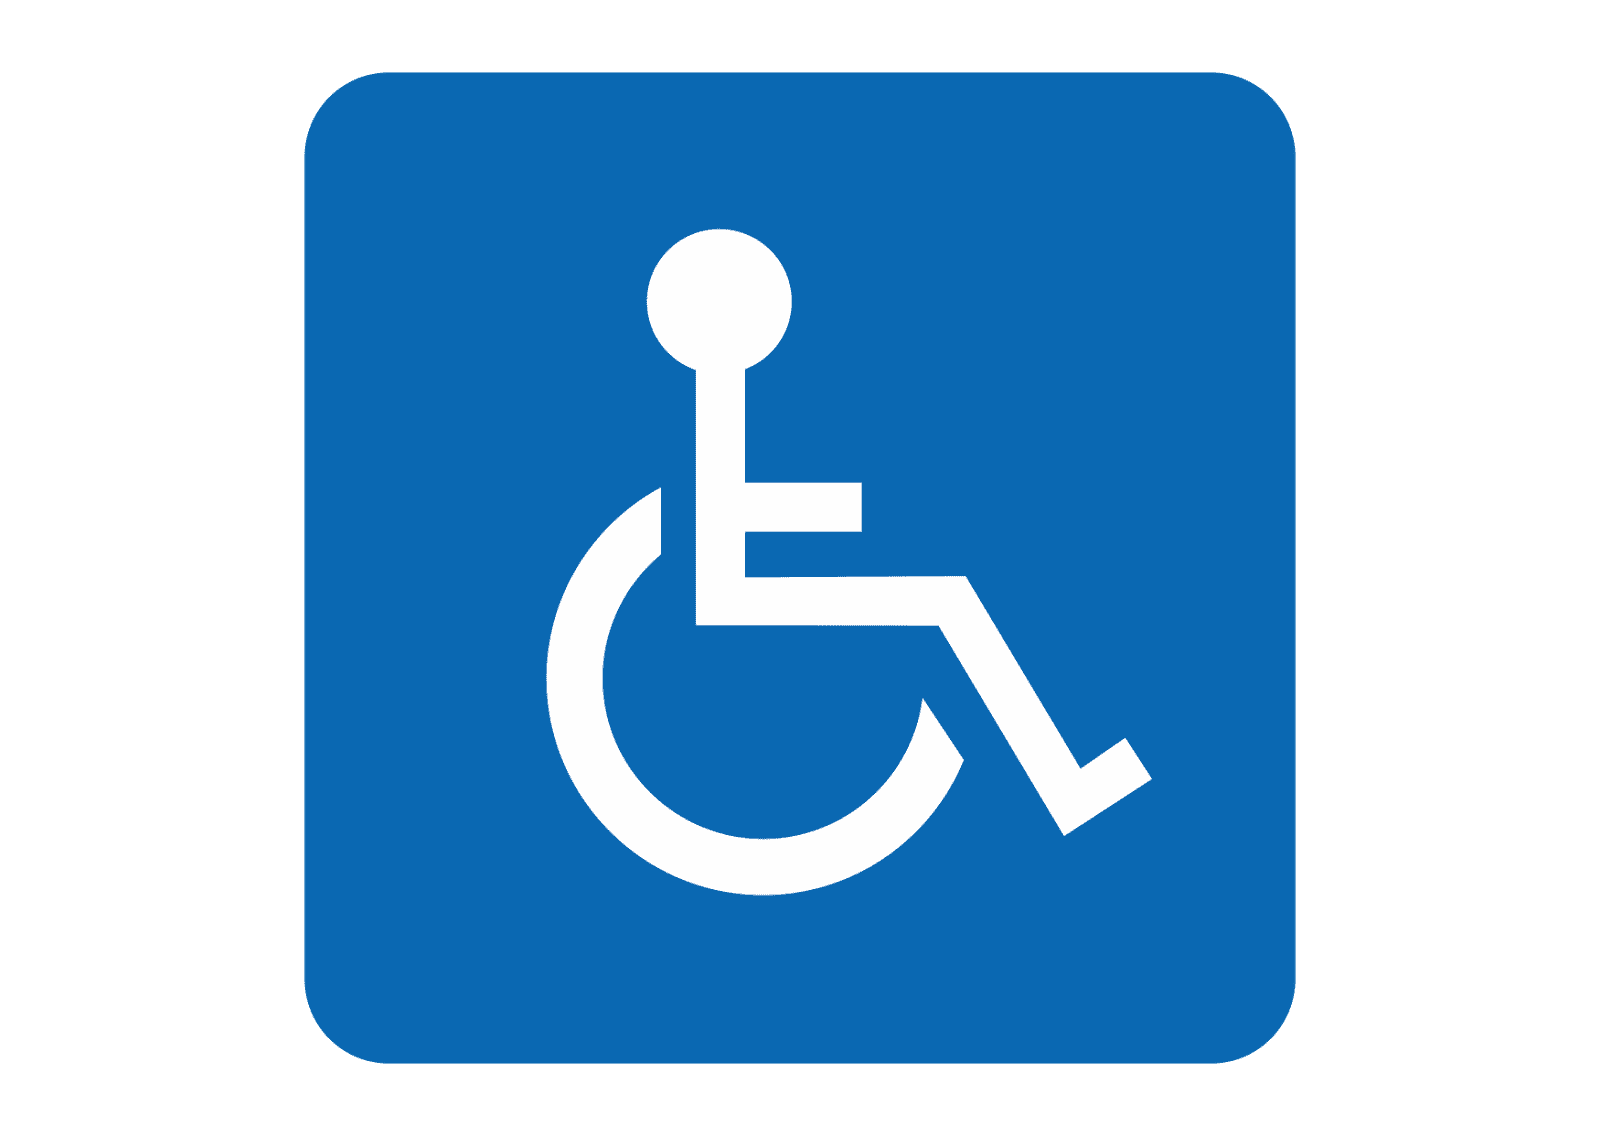 Визуальный знак доступность для инвалидов передвигающихся на креслах ...